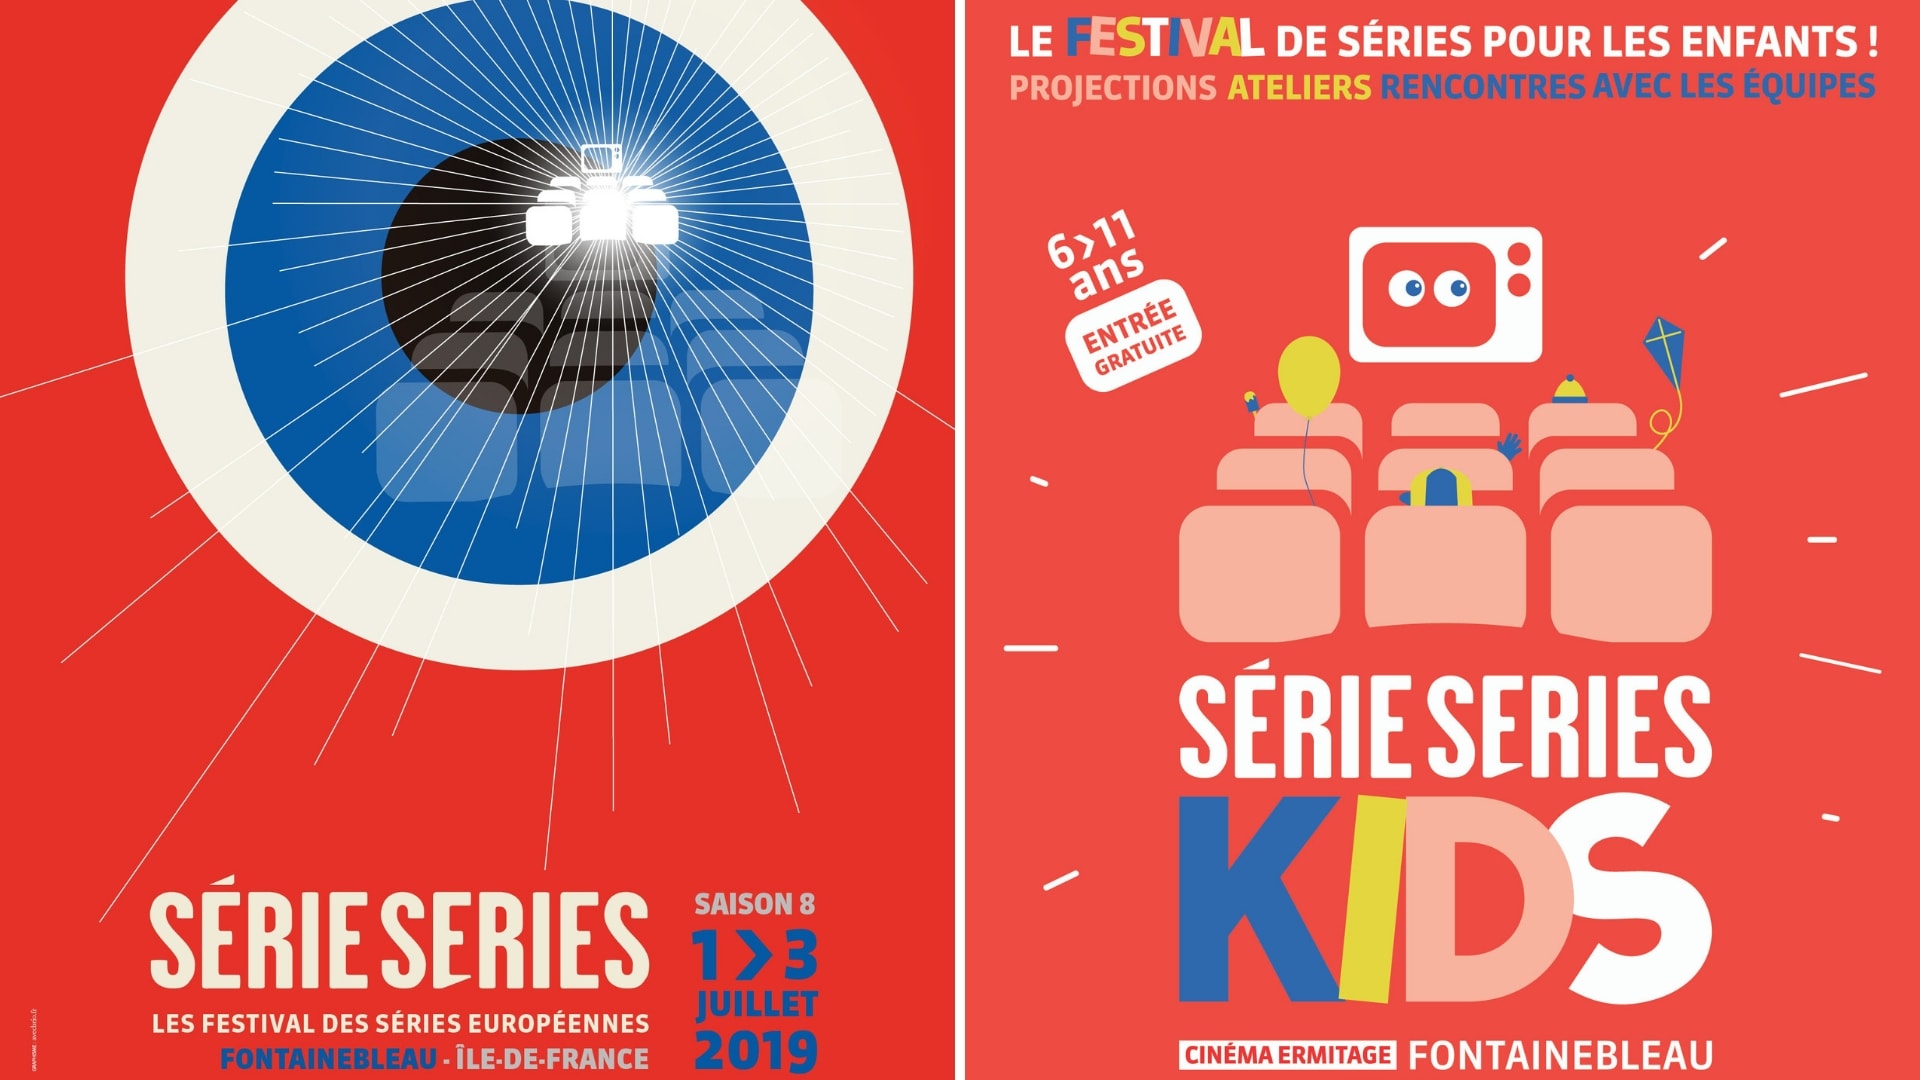 Affiche - Série Series et Série Series Kids 2019 festival séries pour petits et grands